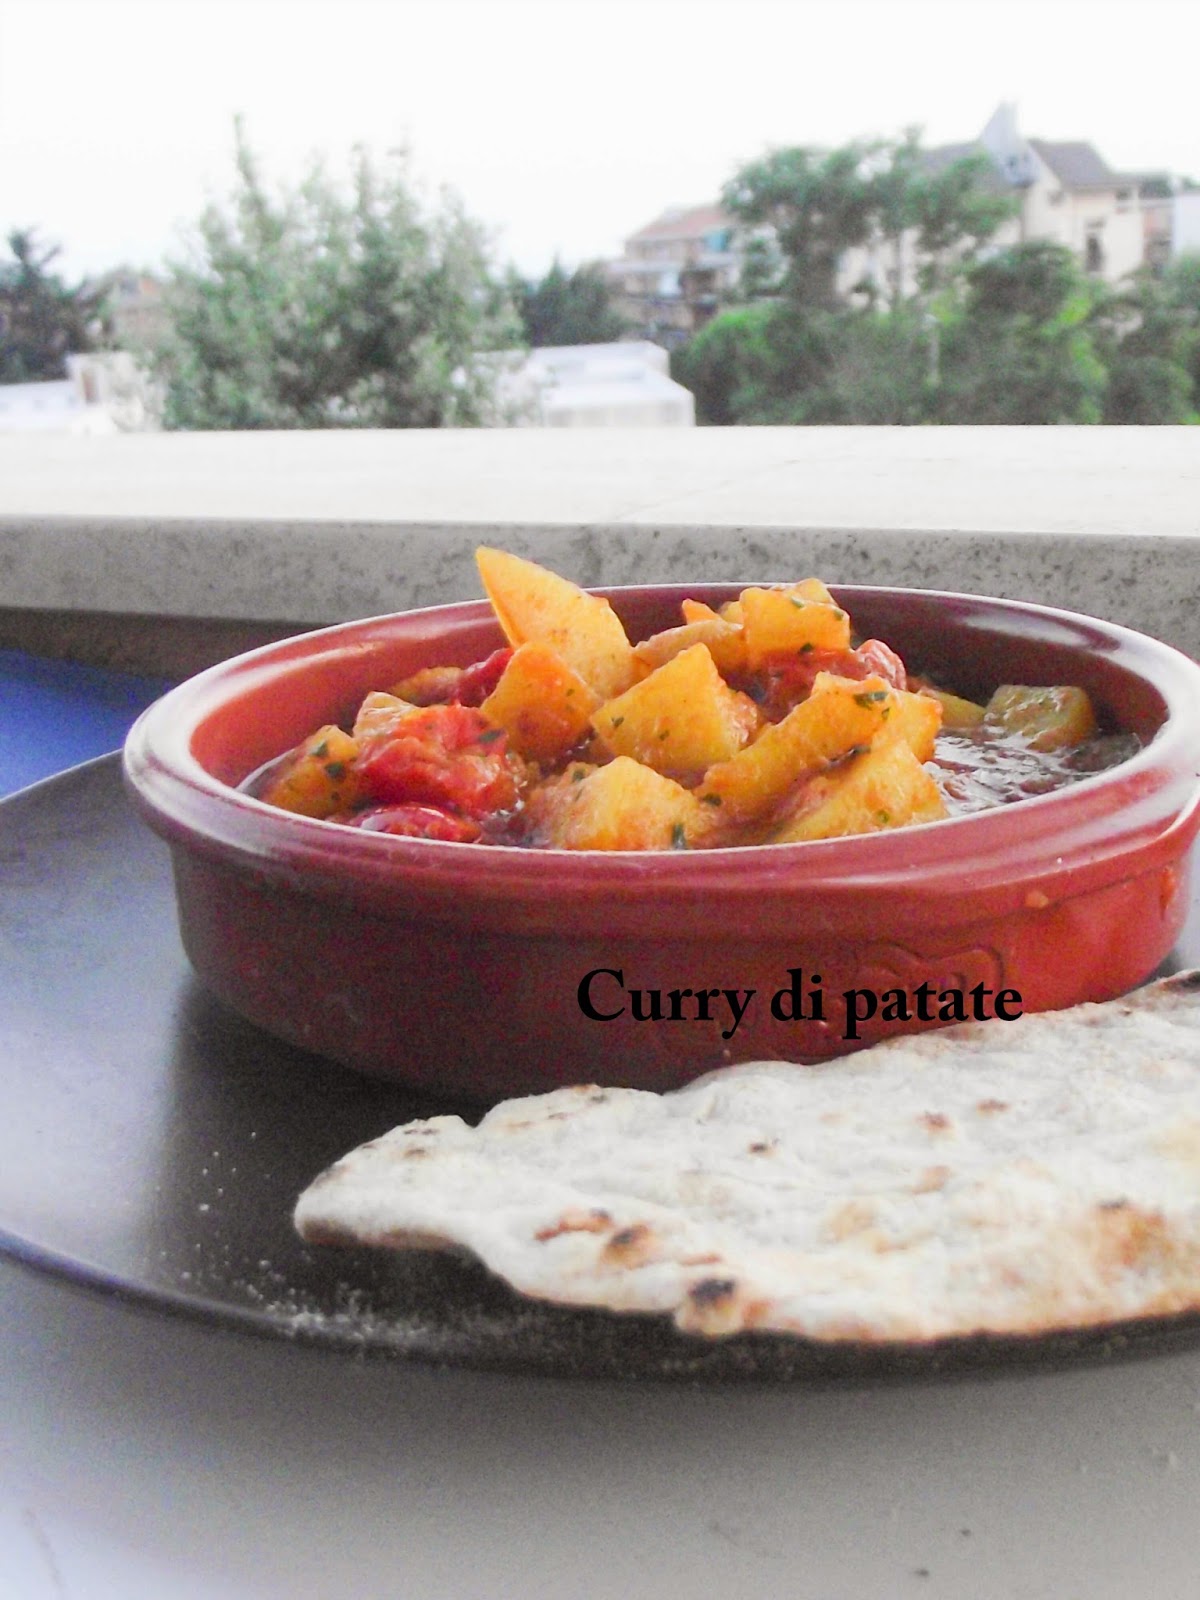 Curry di patate e Sheherazade